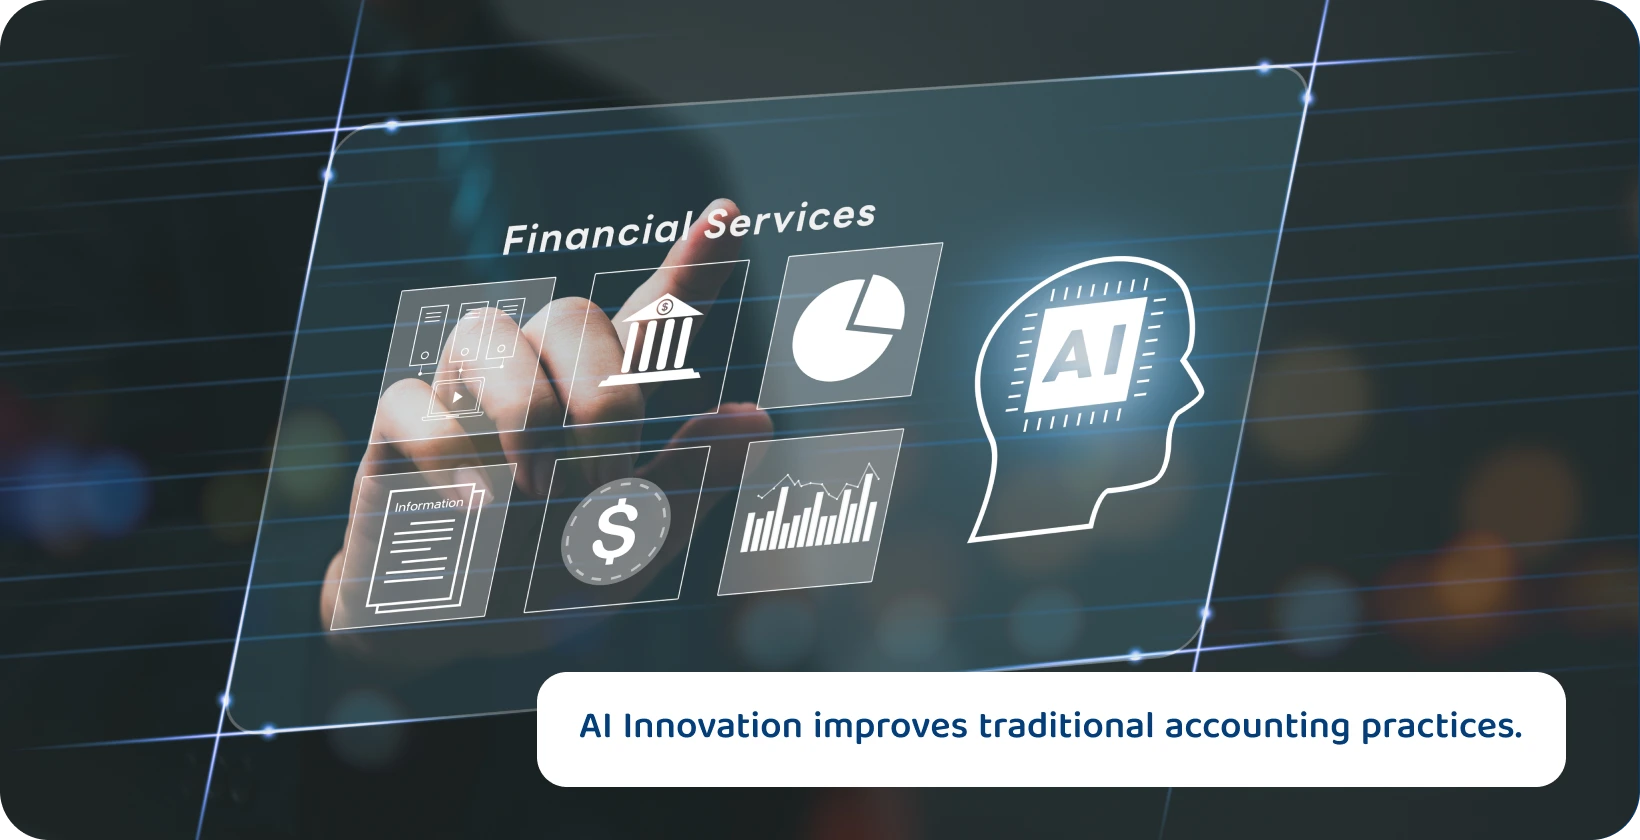 Inteligența artificială în interfața de contabilitate care afișează instrumente de analiză și raportare pentru îmbunătățirea procesului decizional.